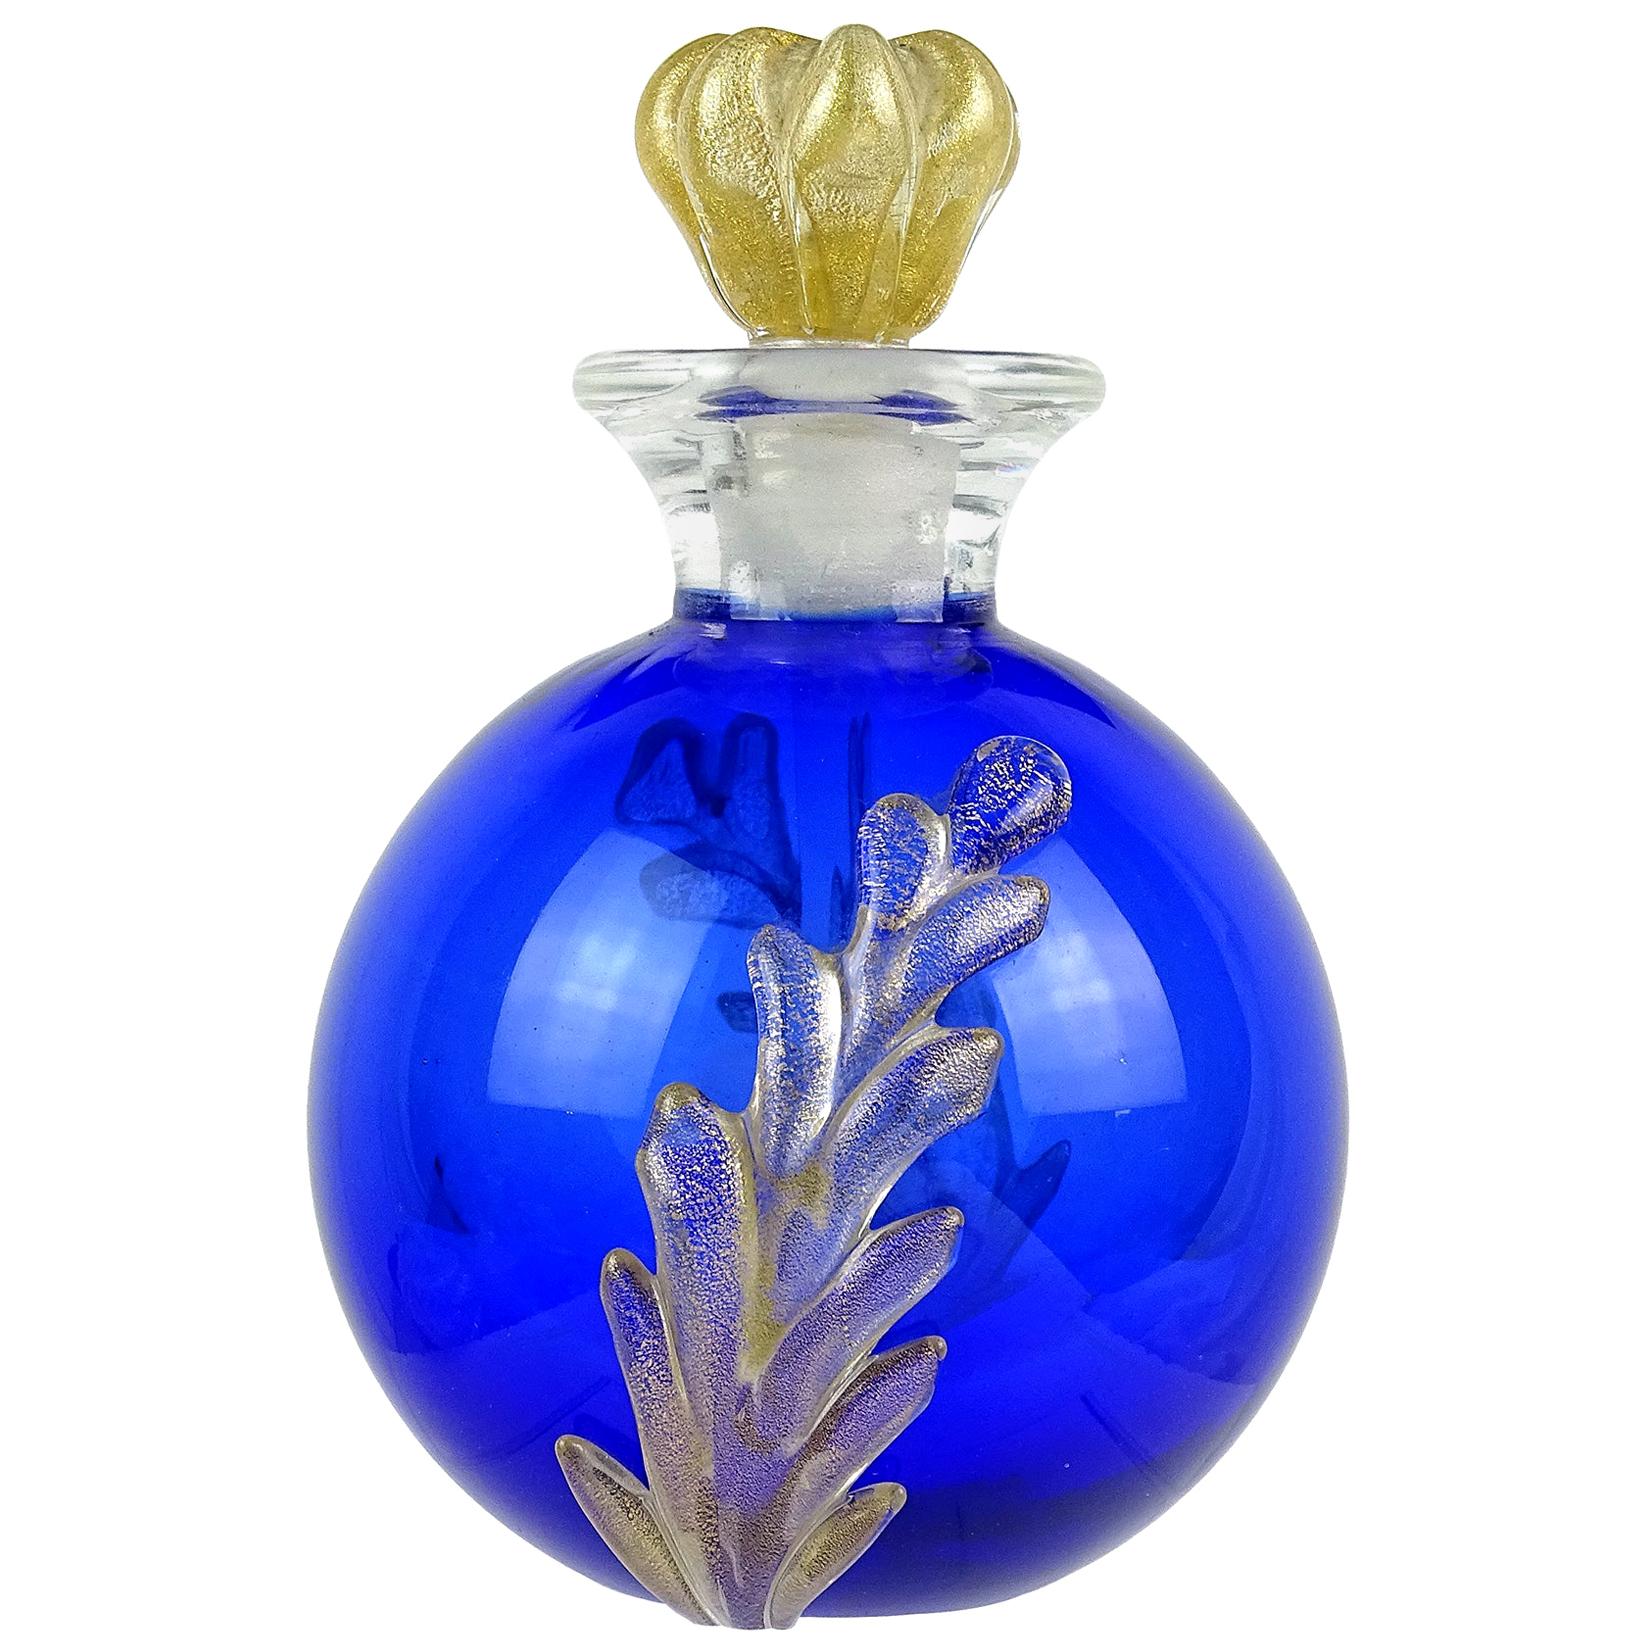 Seguso Murano Cobalt Blue Gold Flecks Italian Art Glass Vanity Perfume Bottle